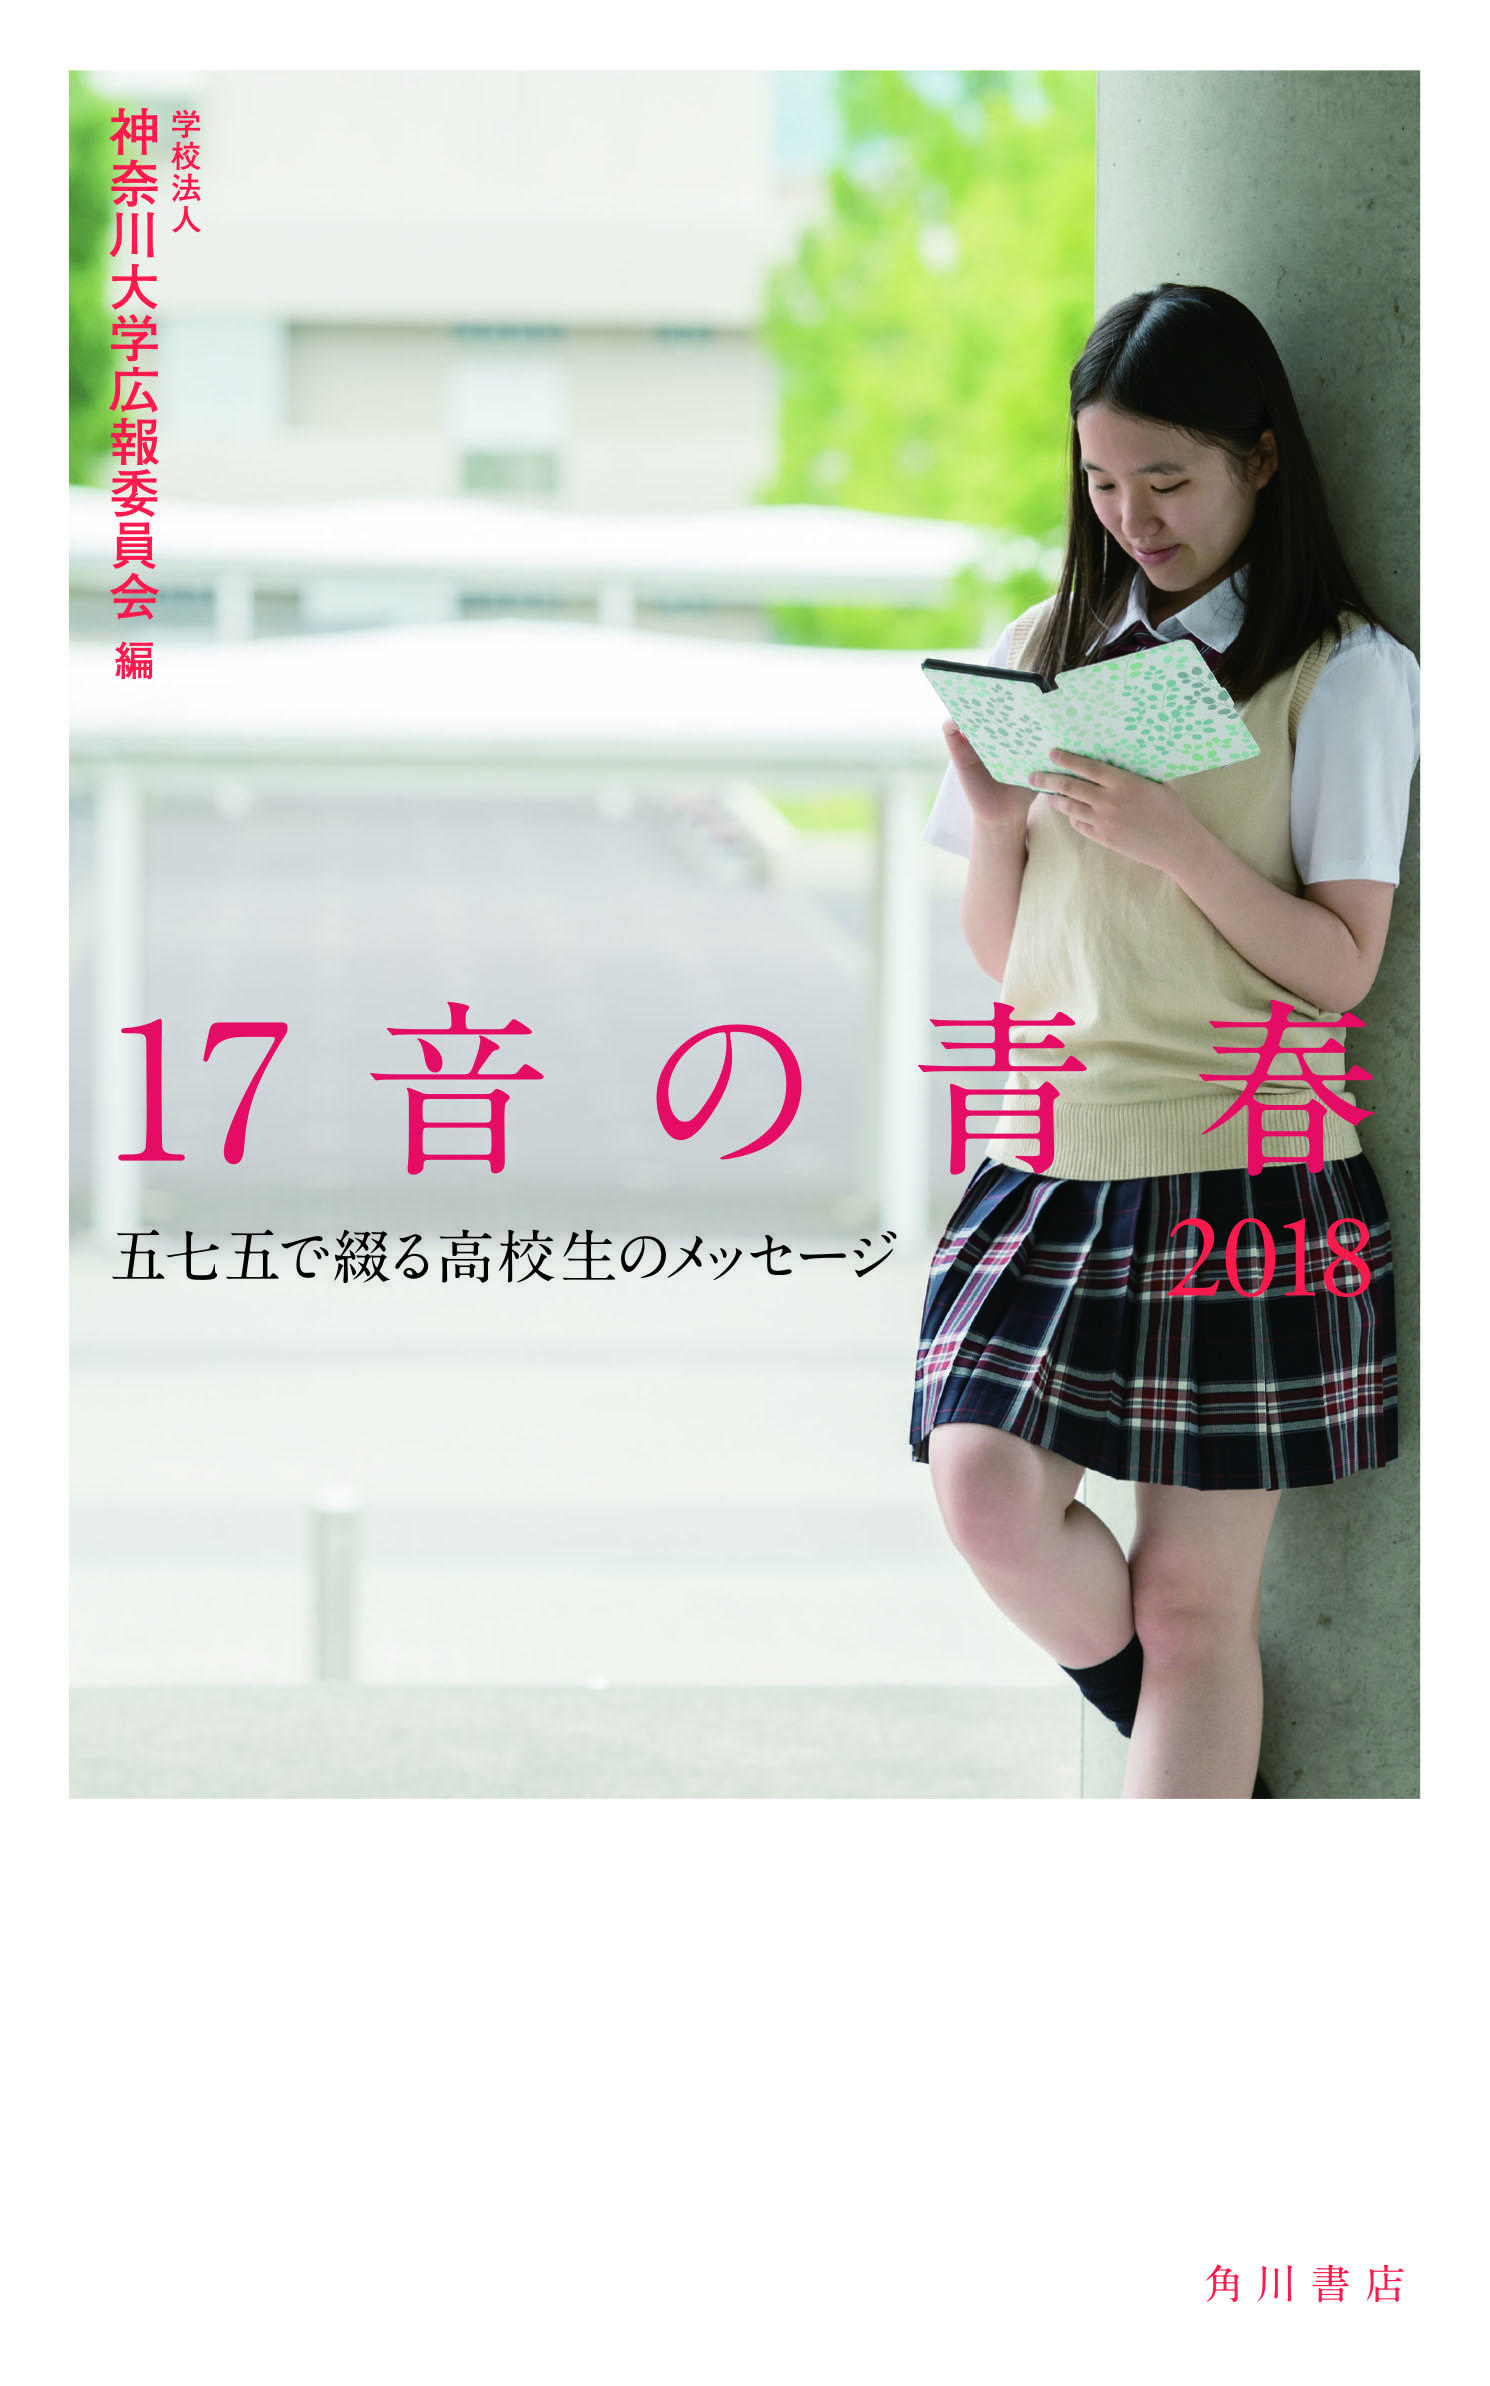 第21回 神奈川大学全国高校生俳句大賞 選考結果について